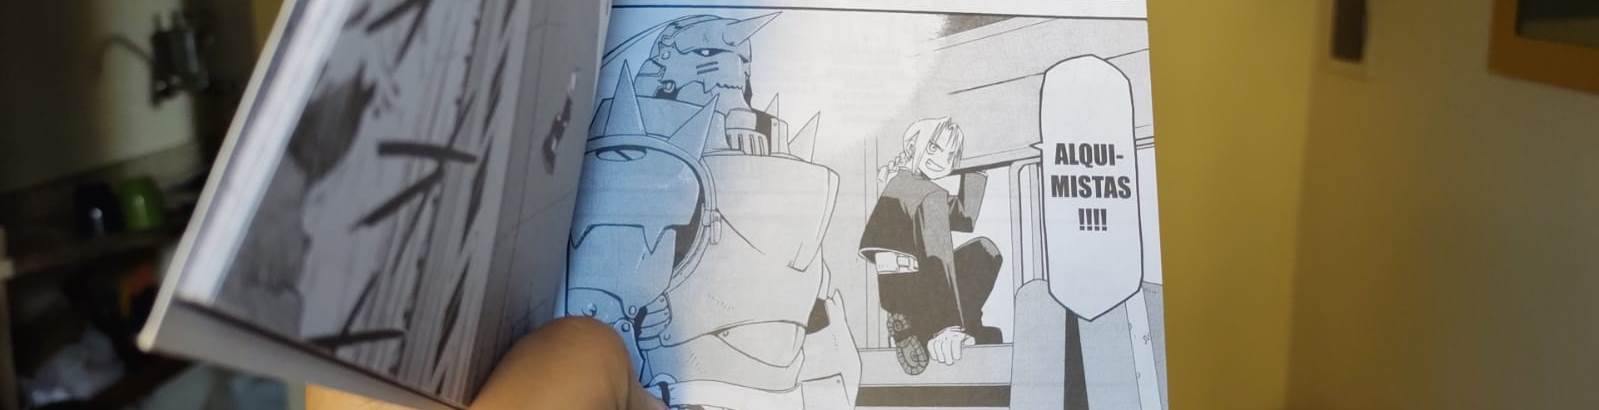 Foto do mangá, mostrando Edward e Alphonse dentro de um trem. Edward está na janela, pronto para sair por ela, dizendo ALQUIMISTAS